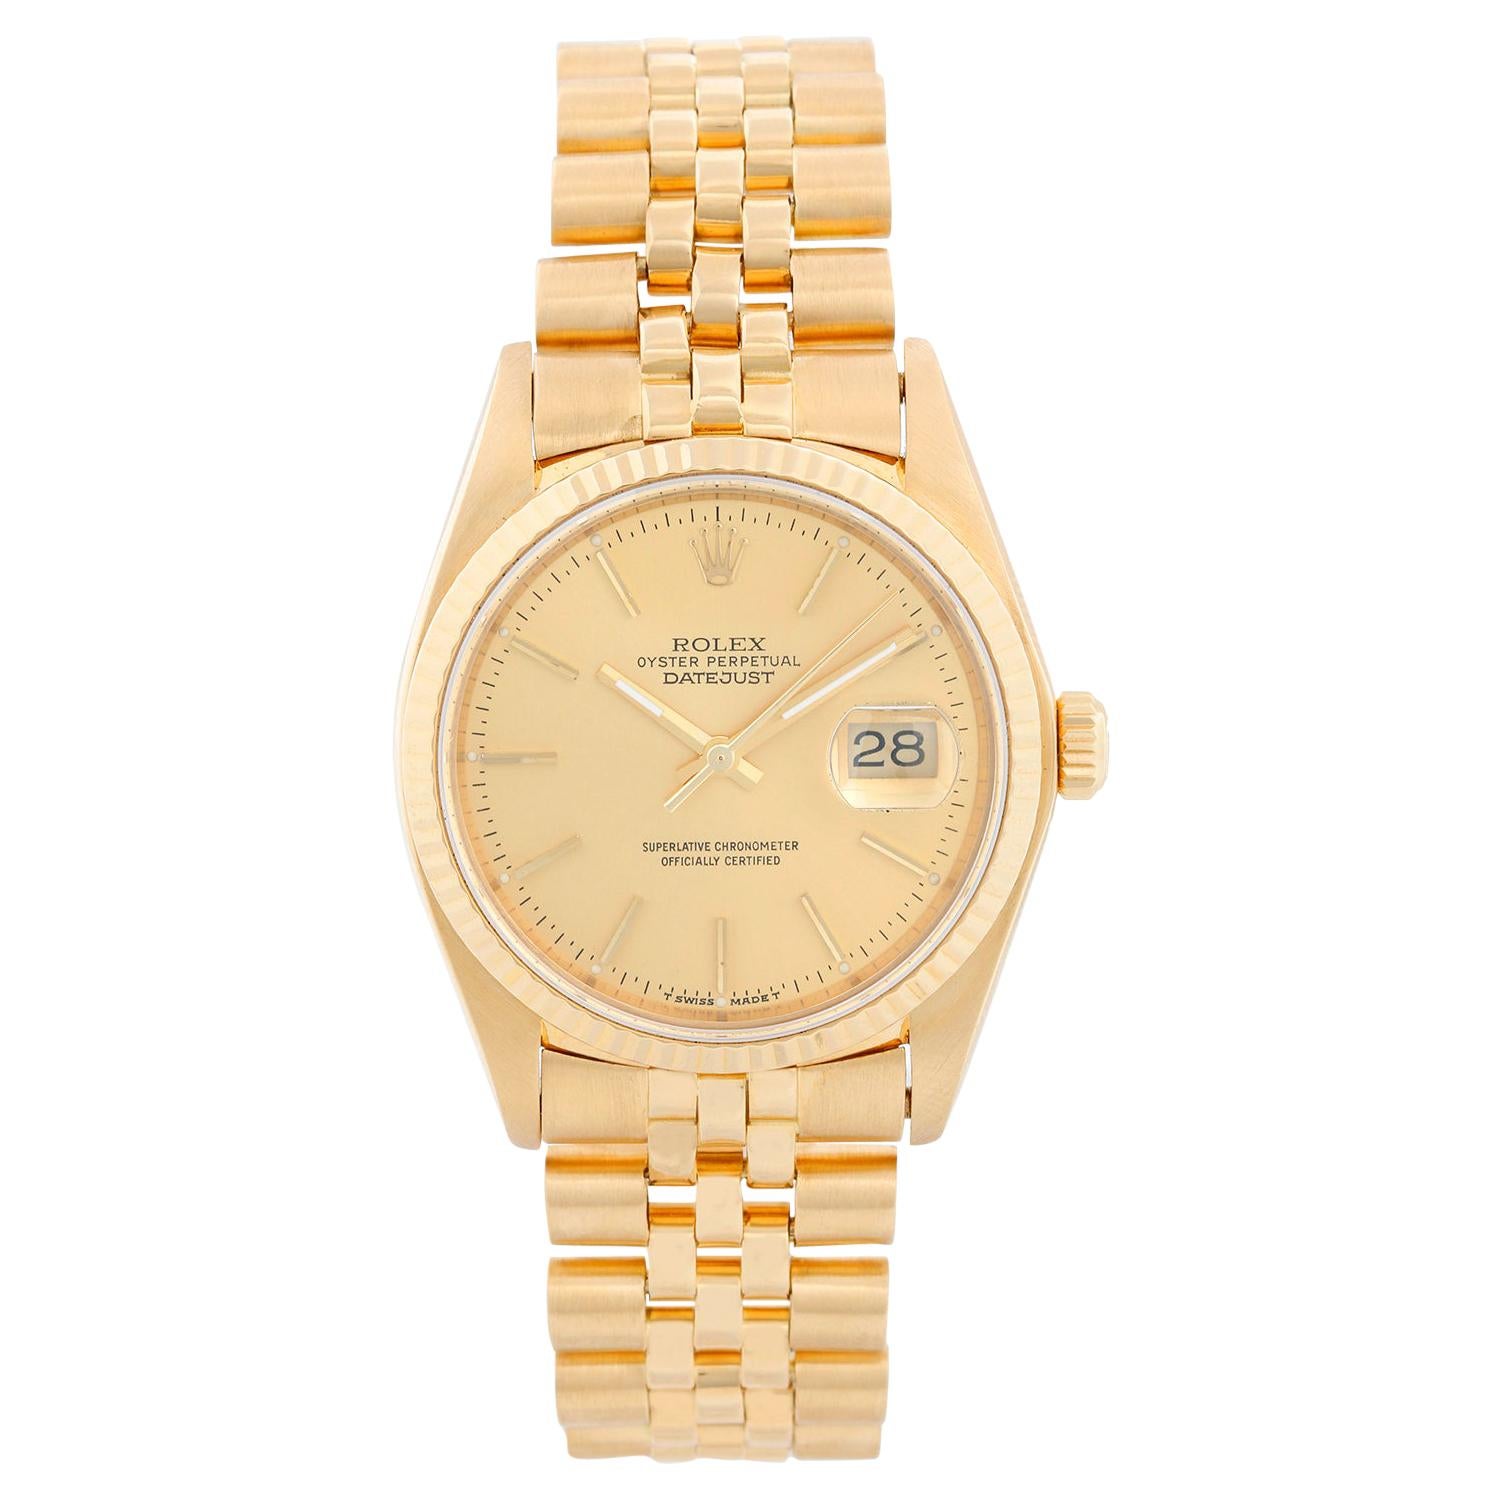 Rolex Datejust Men's 18 Karat Watch 16018